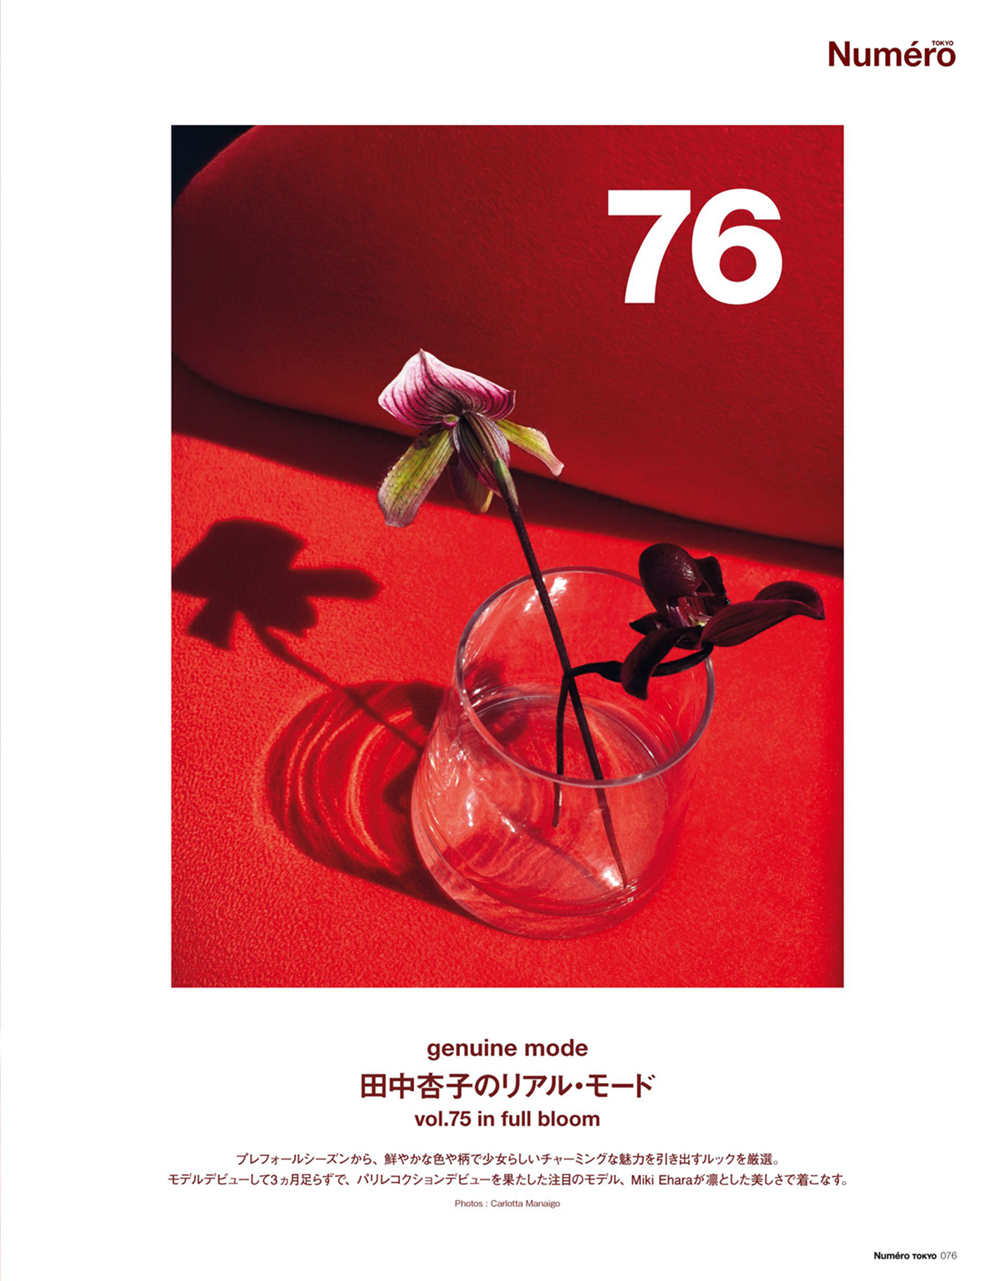 Numéro Japan, June 2017 | Carlotta Manaigo | Numéro | Numerique Retouch Photo Retouching Studio